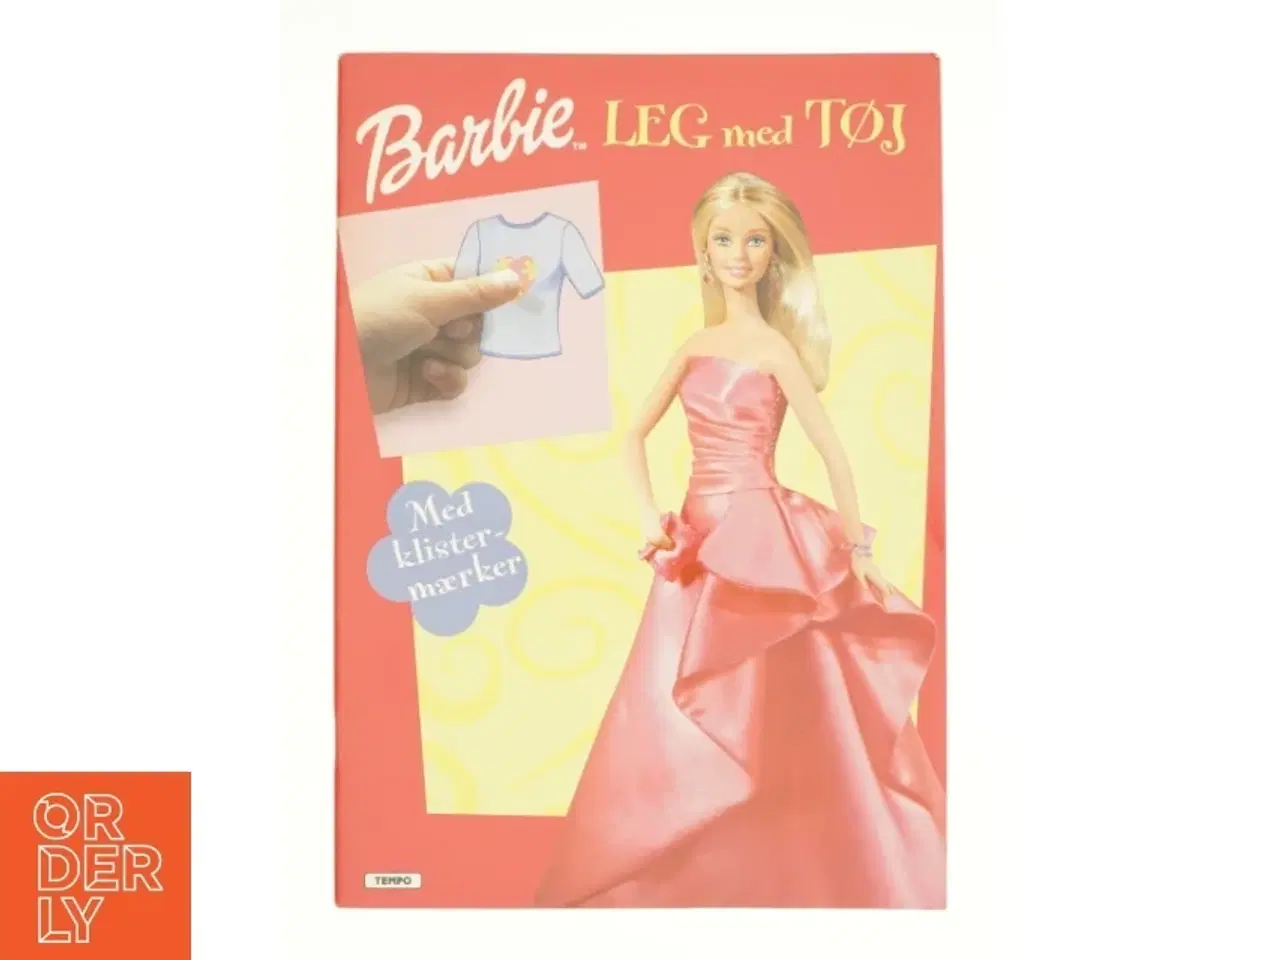 Billede 1 - Barbie leg med tøj